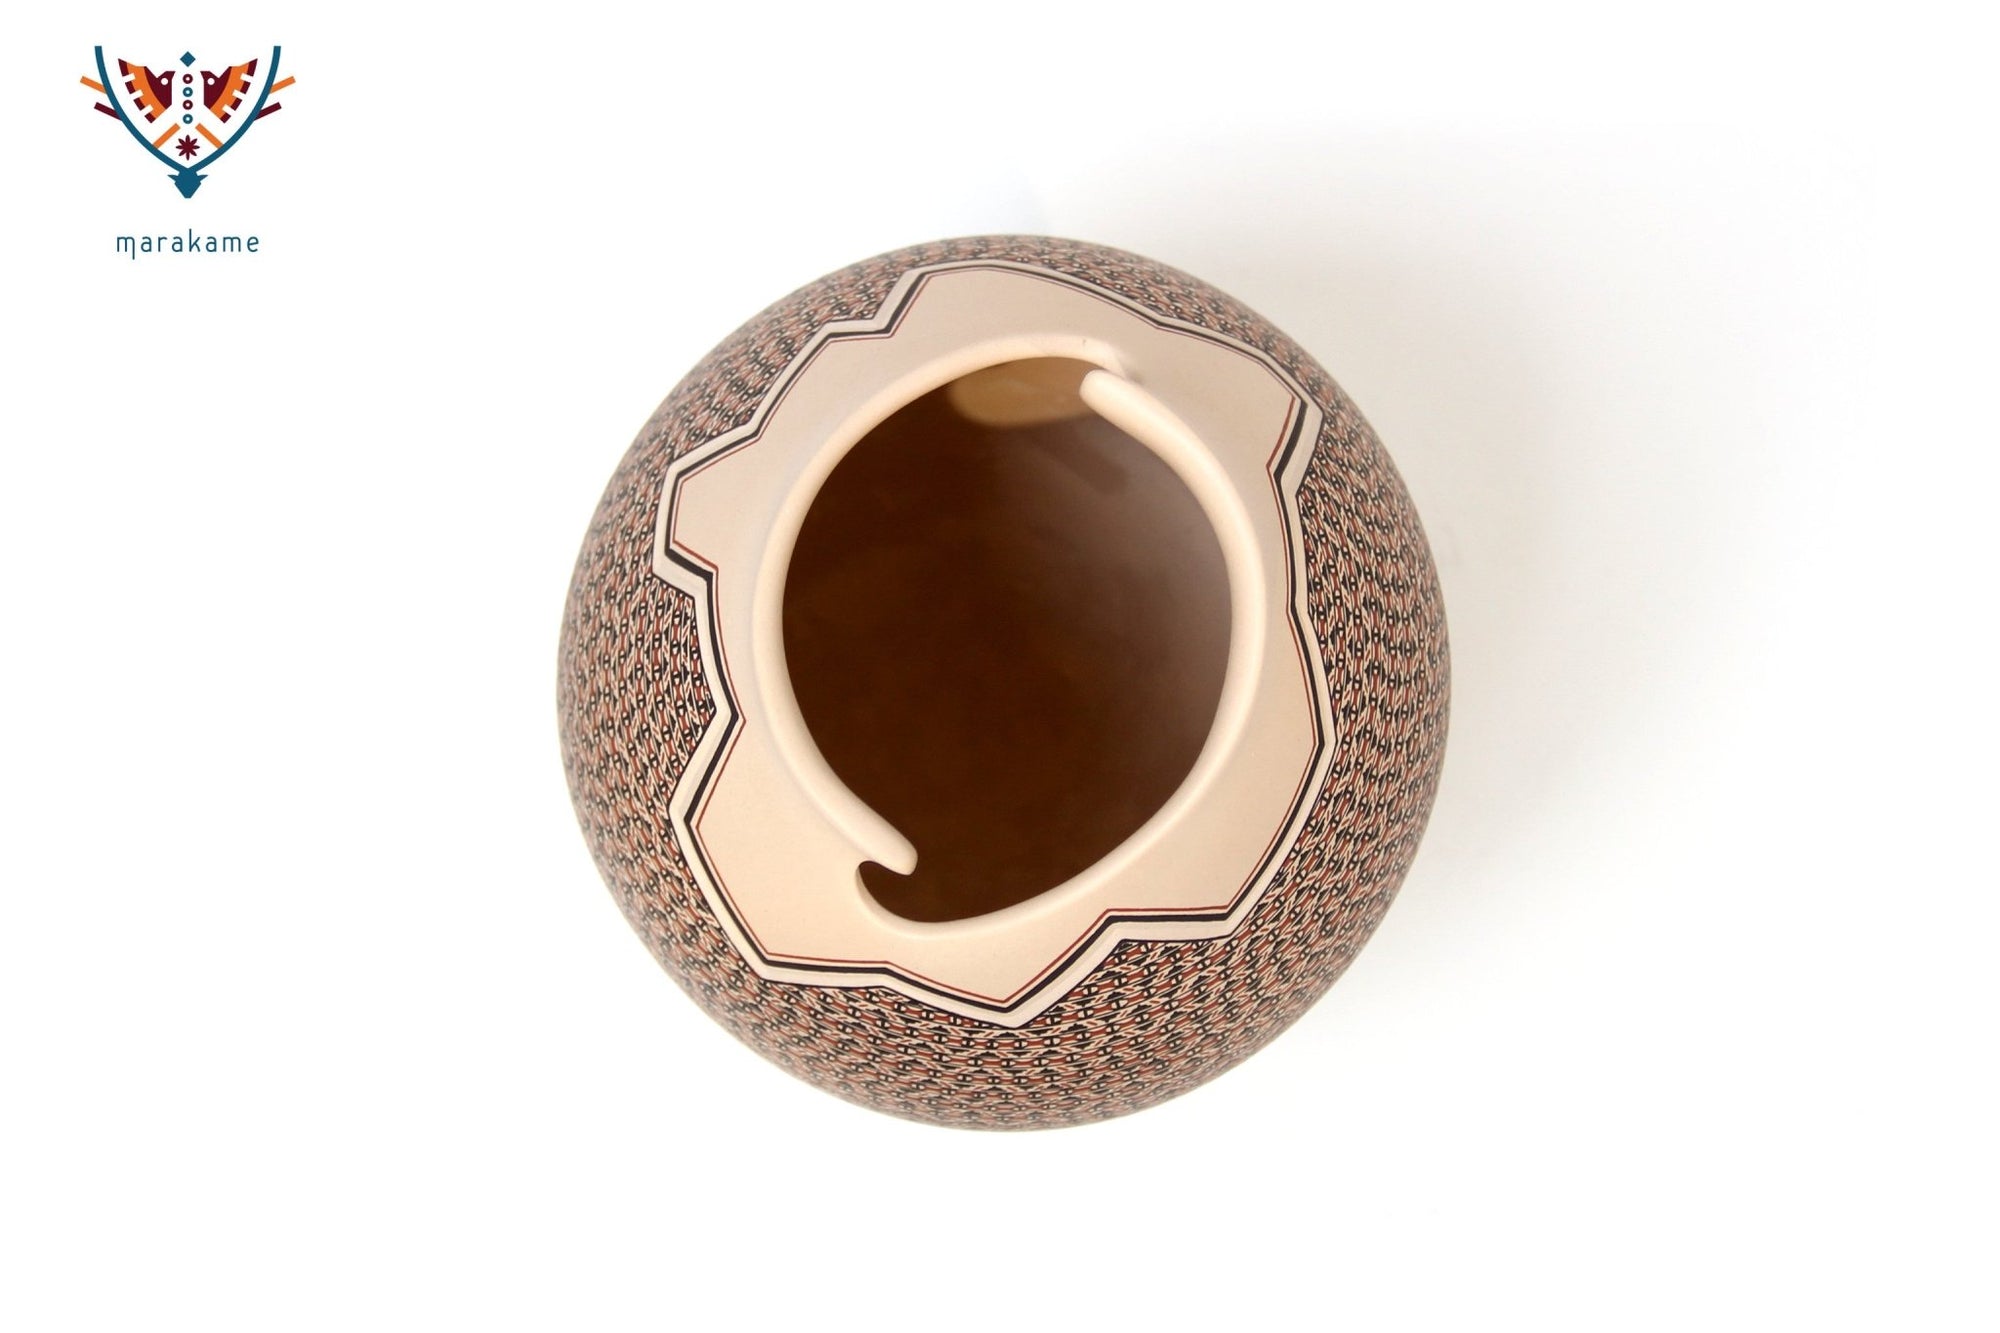 Mata Ortiz Keramik – Kurven – Fein bemalt – Huichol-Kunst – Marakame